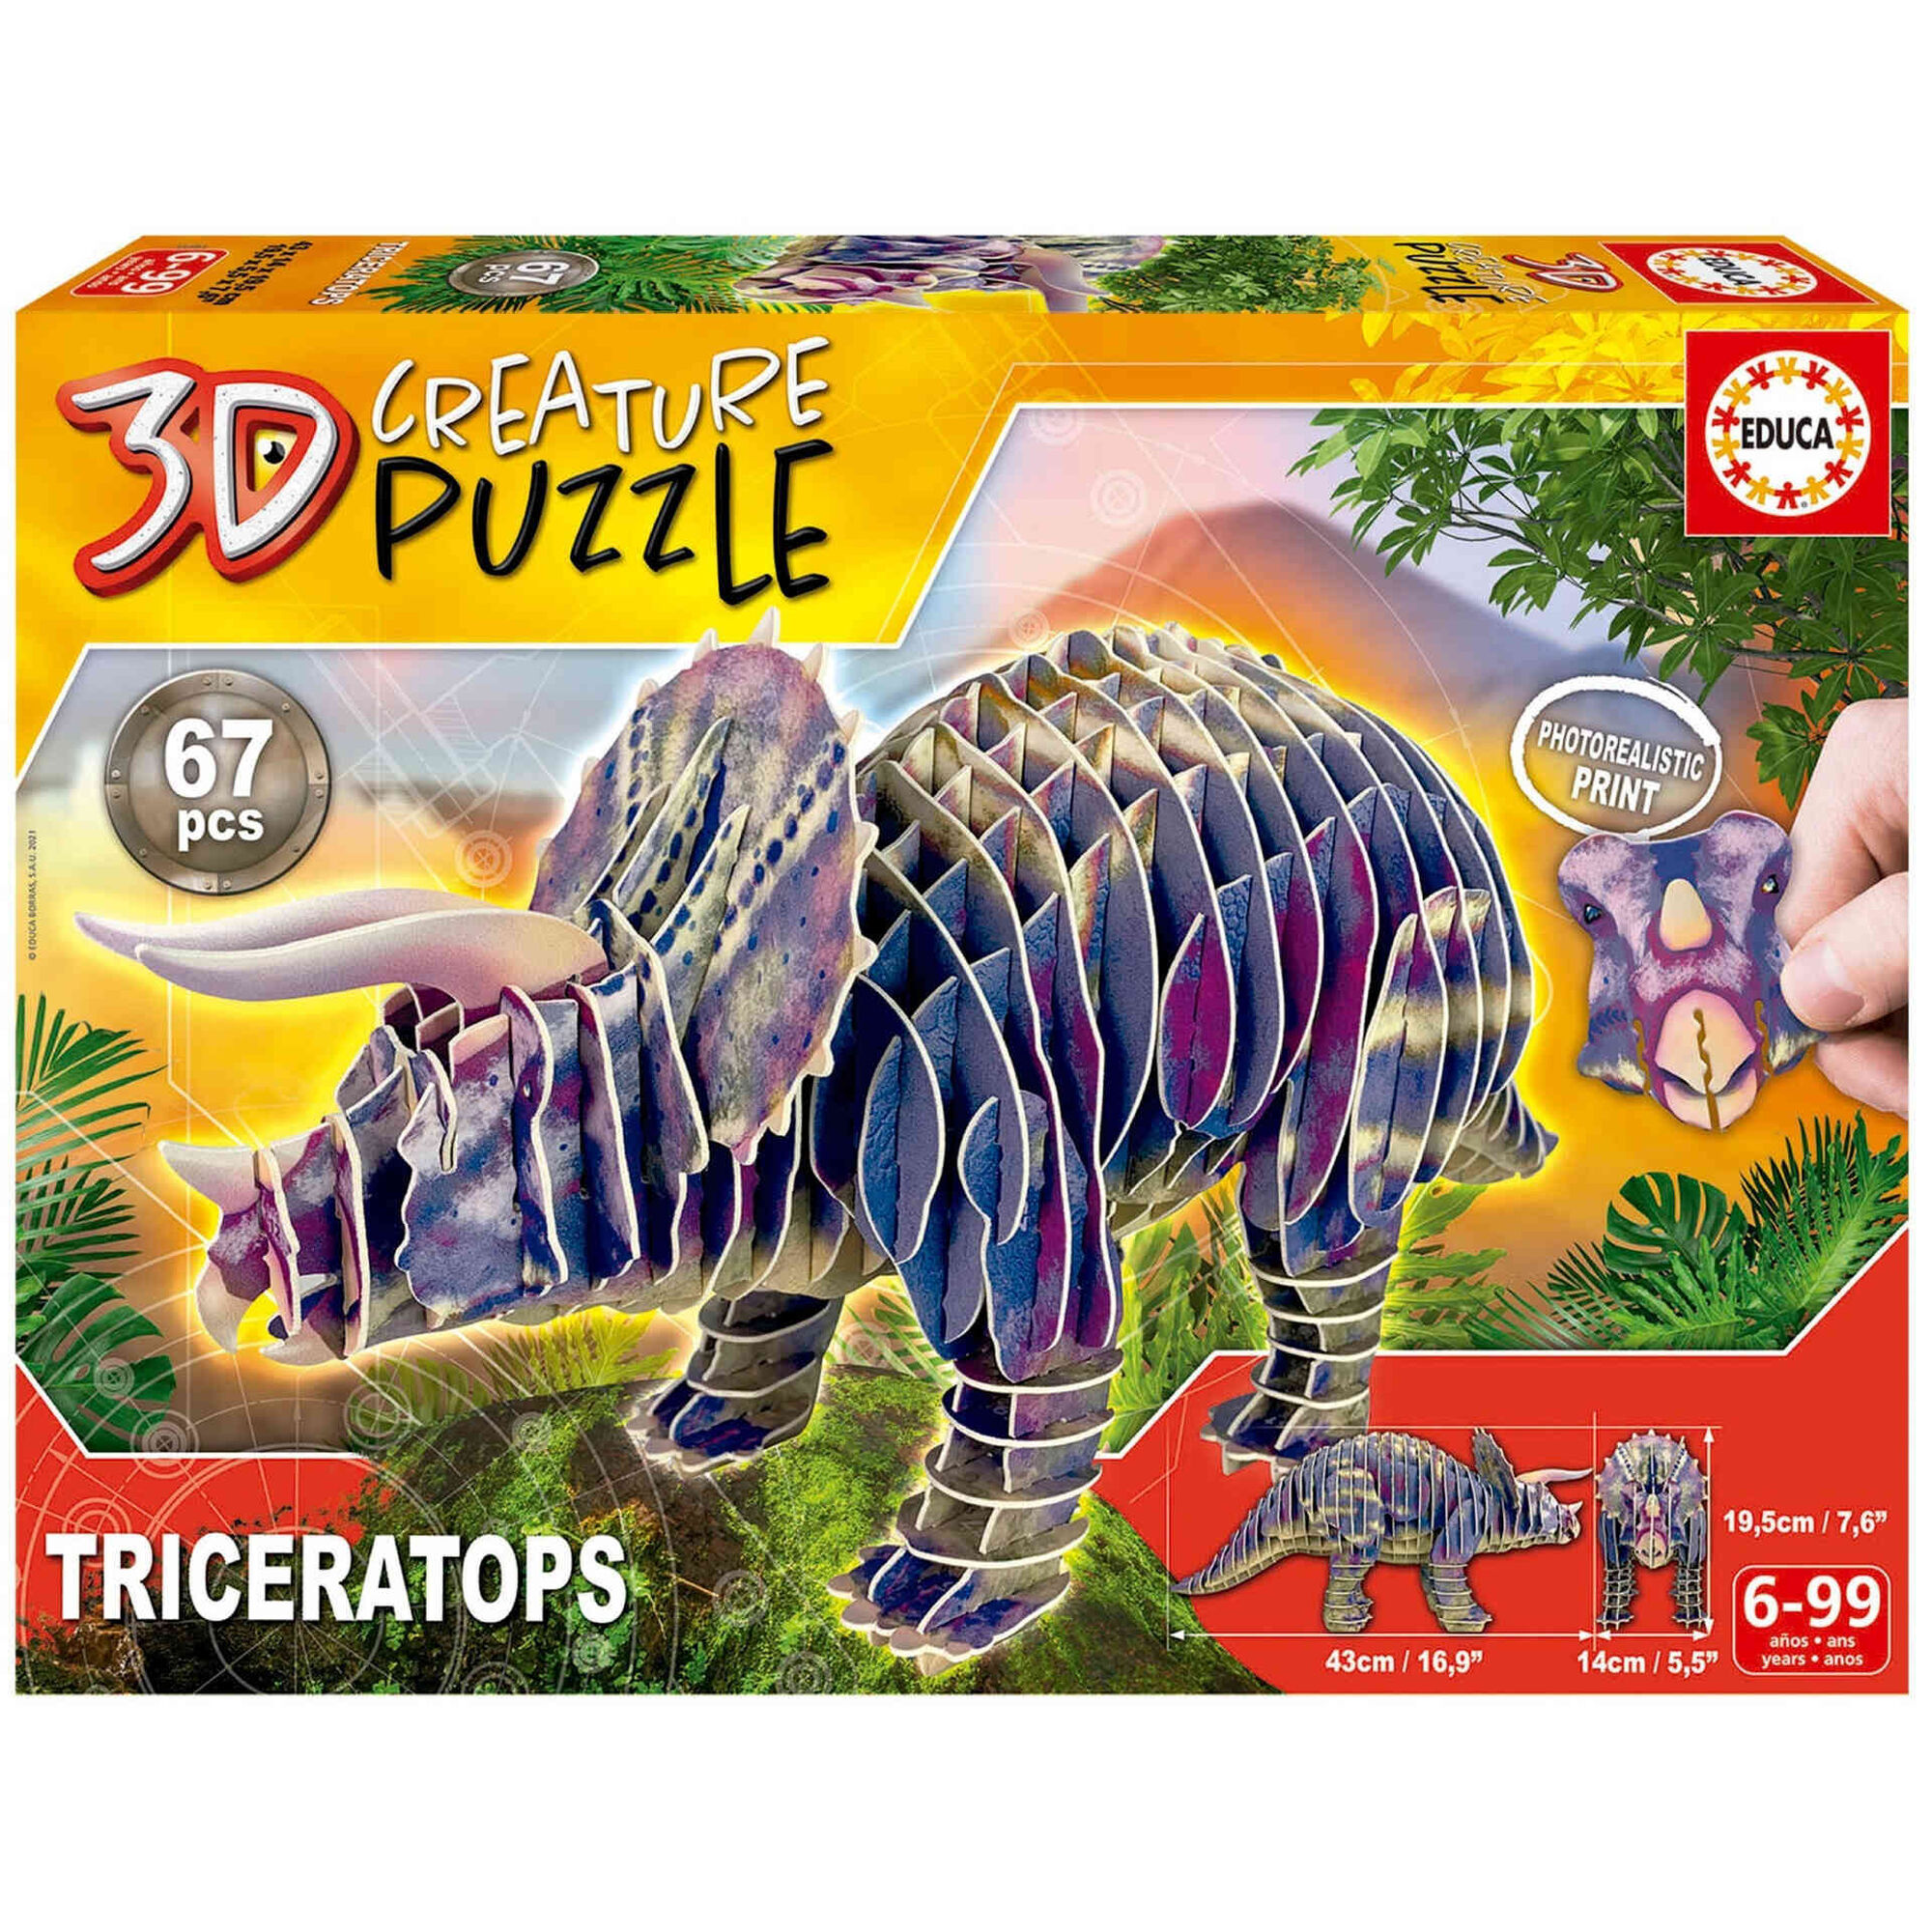 Puzzle 3D Creature Triceratops 67 Peças